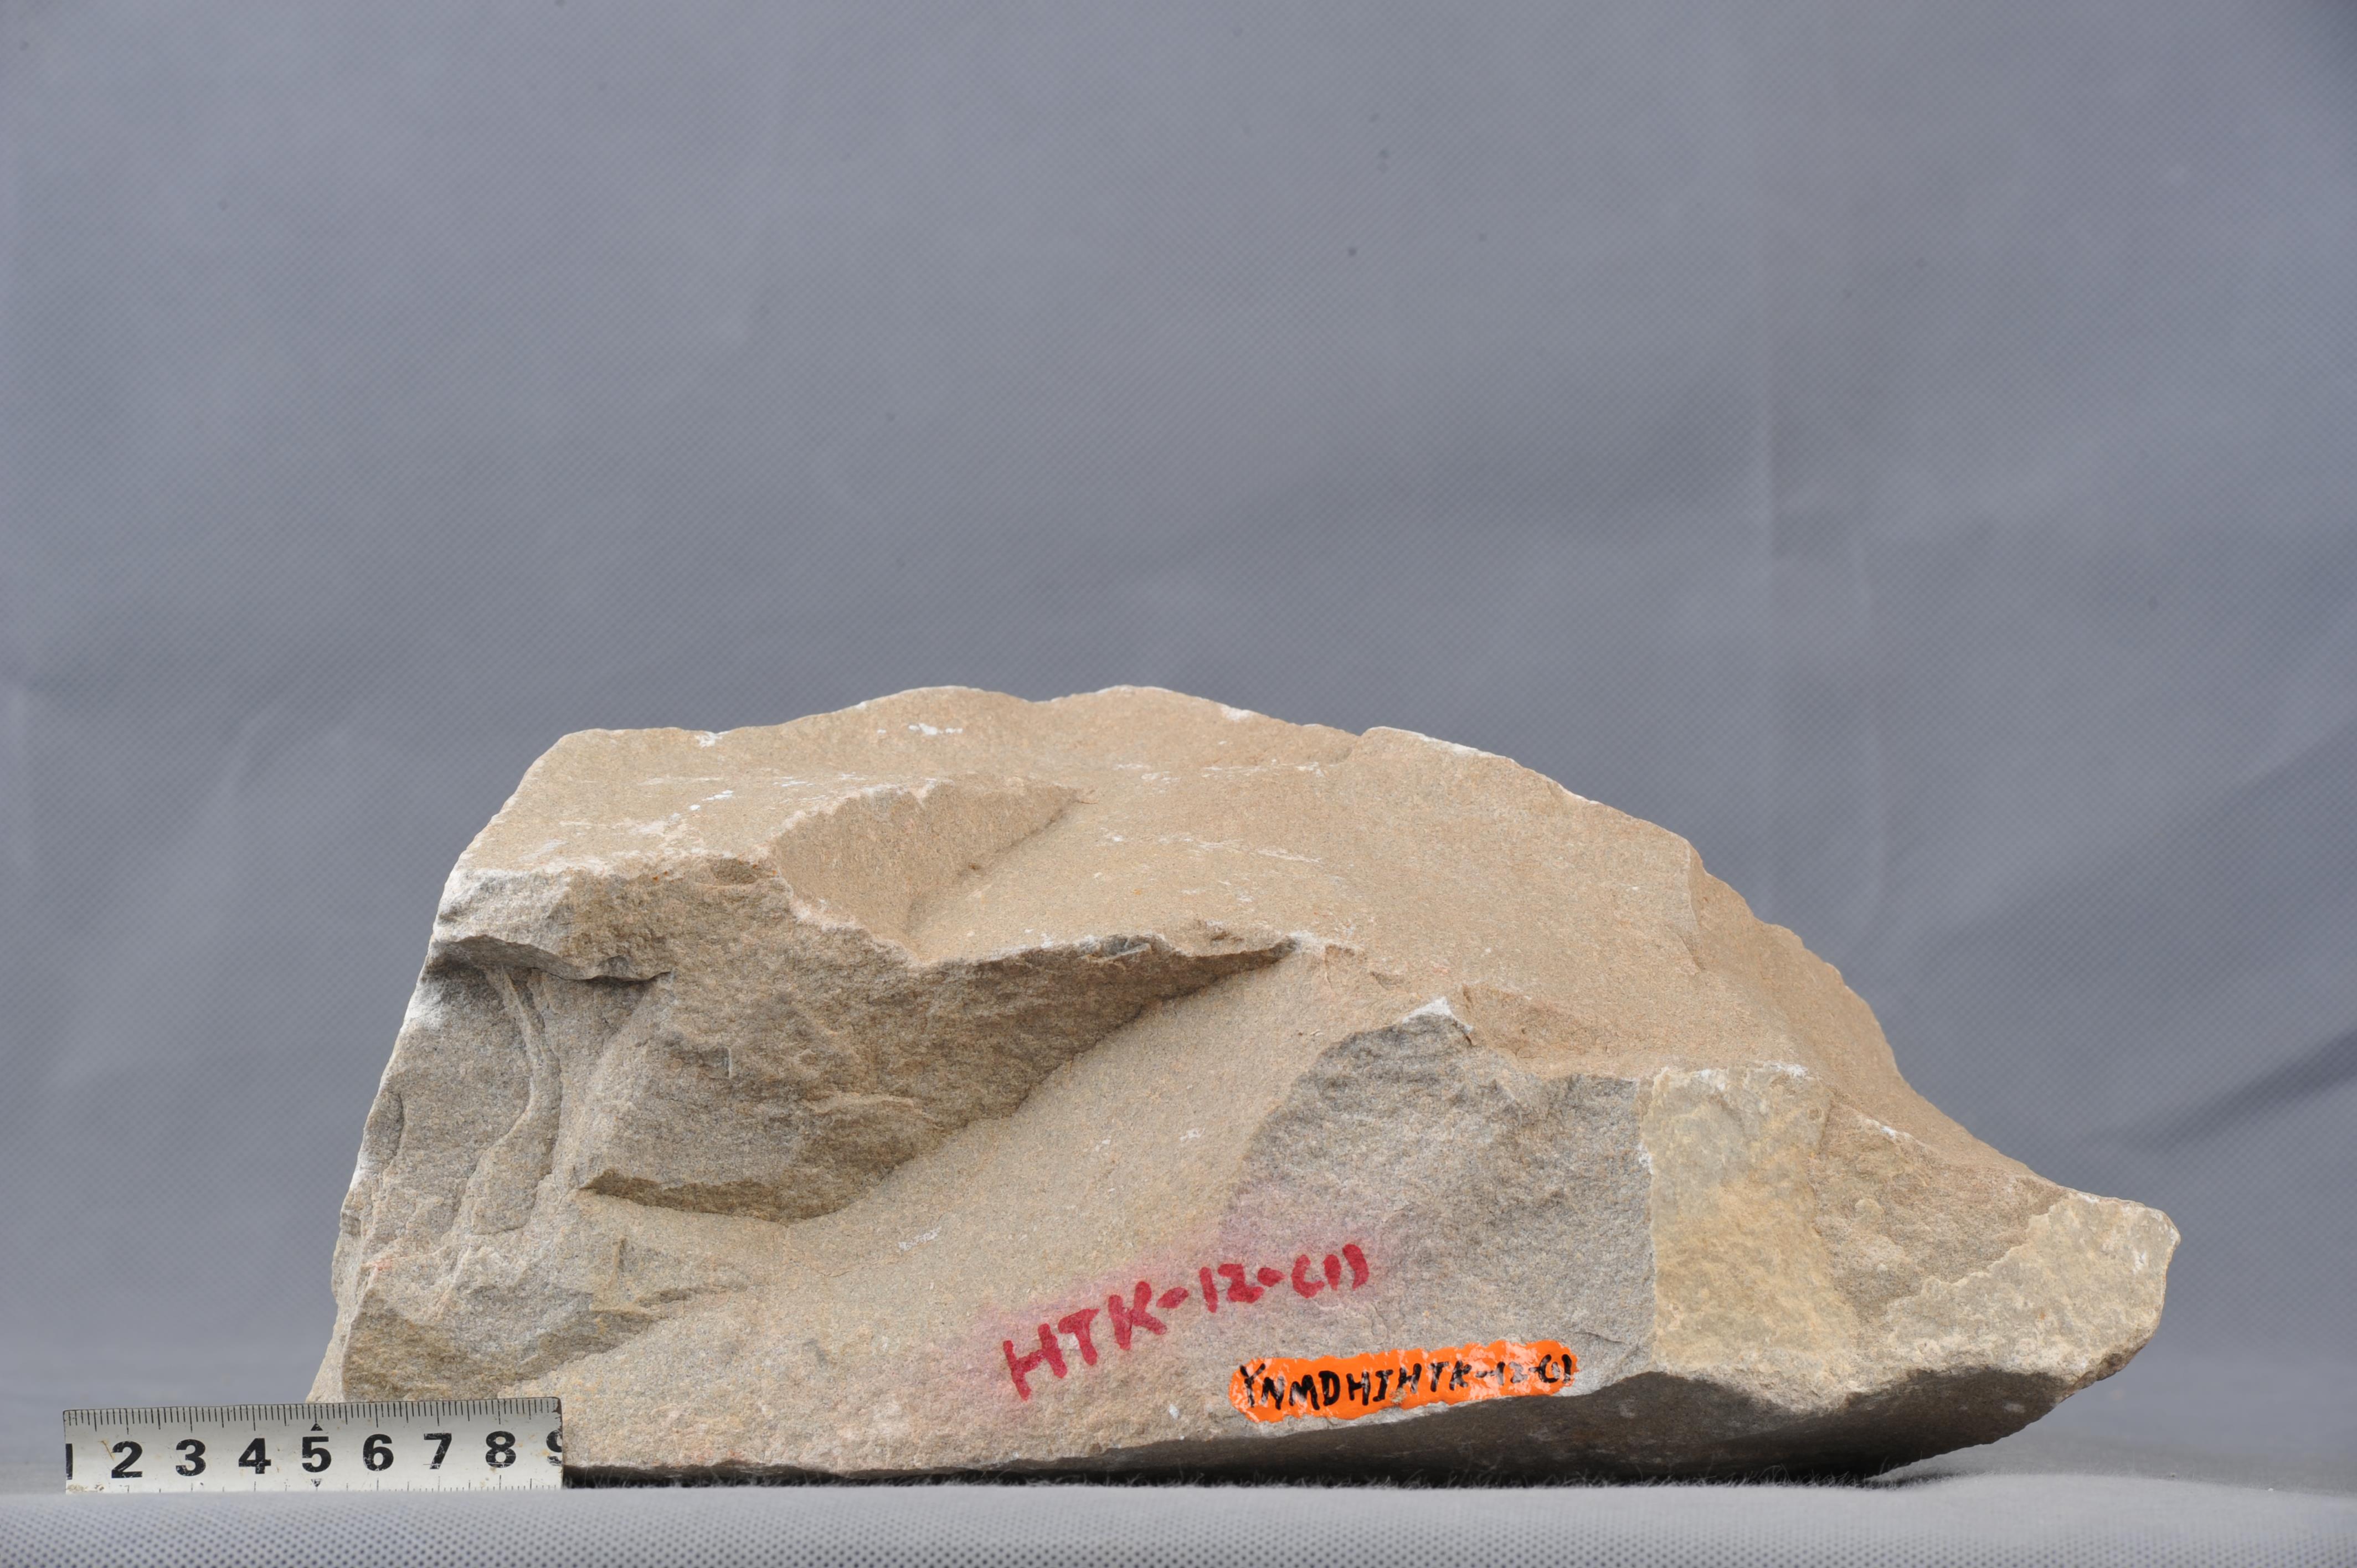 长石石英砂岩:浅灰色,细粒,块状,成分要为石英,长石,致密.